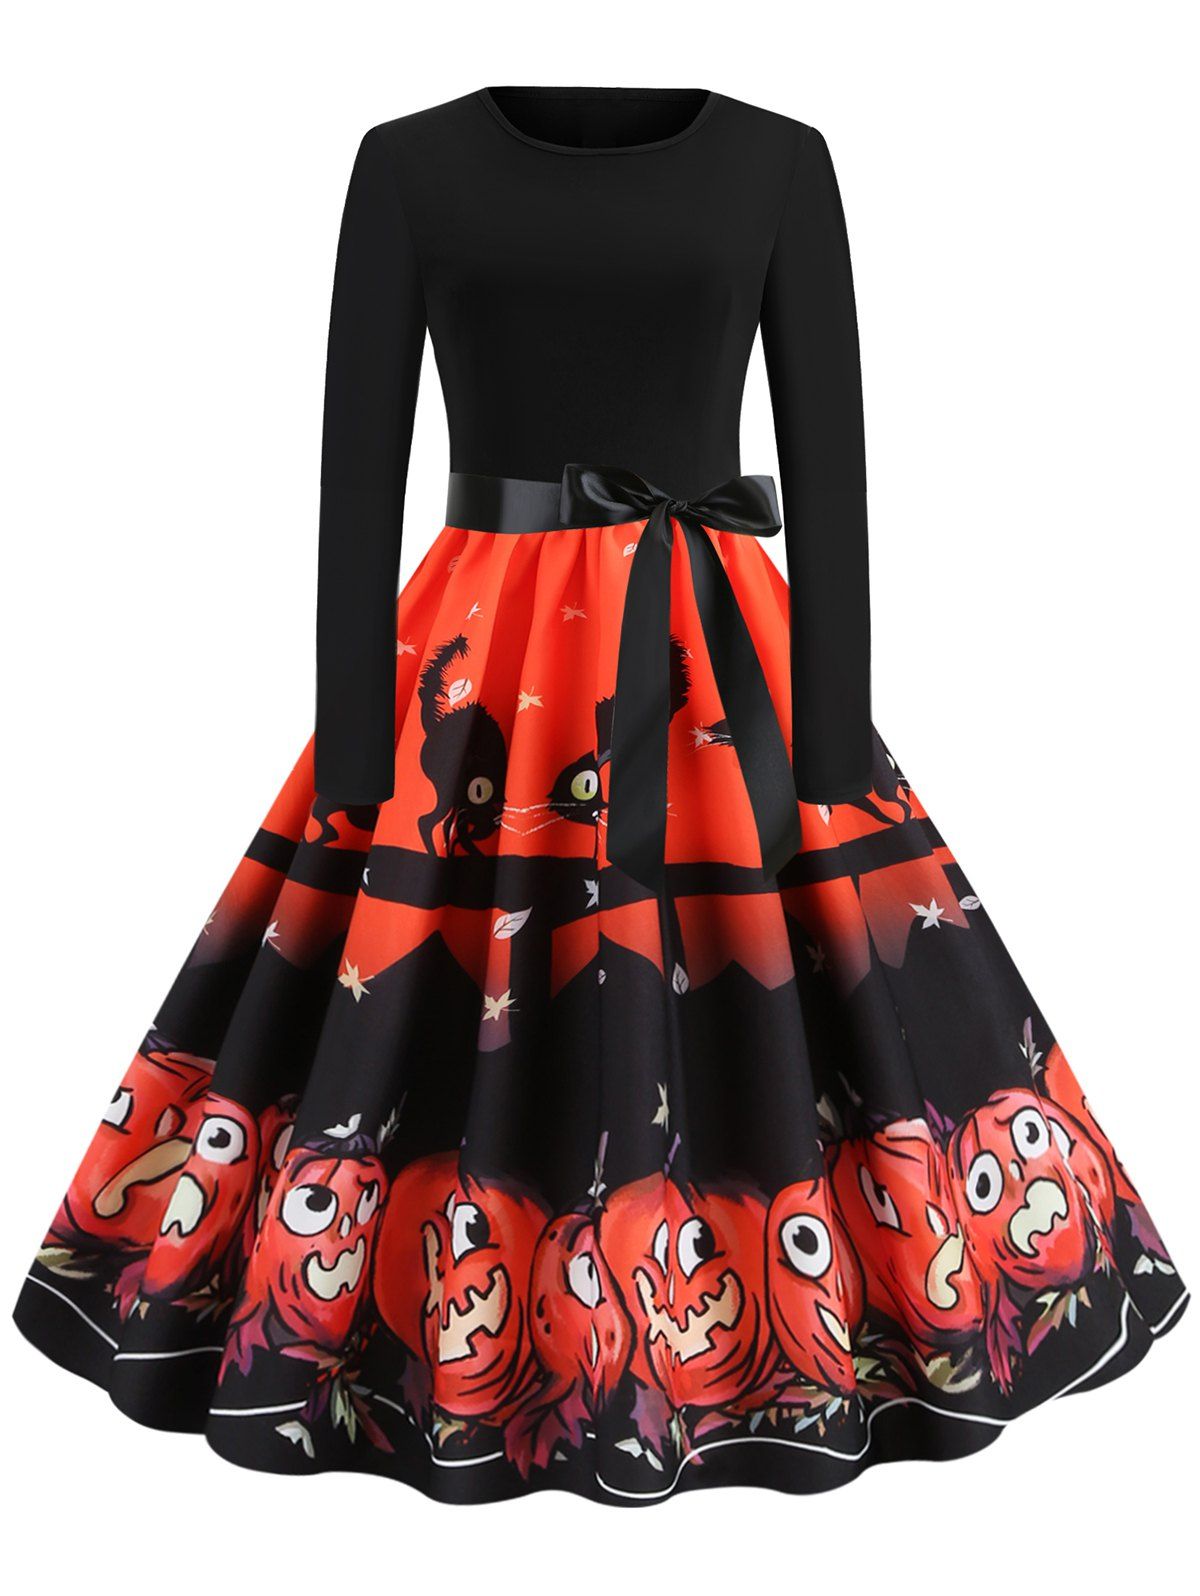 Retro Pumpkin Printed Halloween Dress - VALENTINE RED M